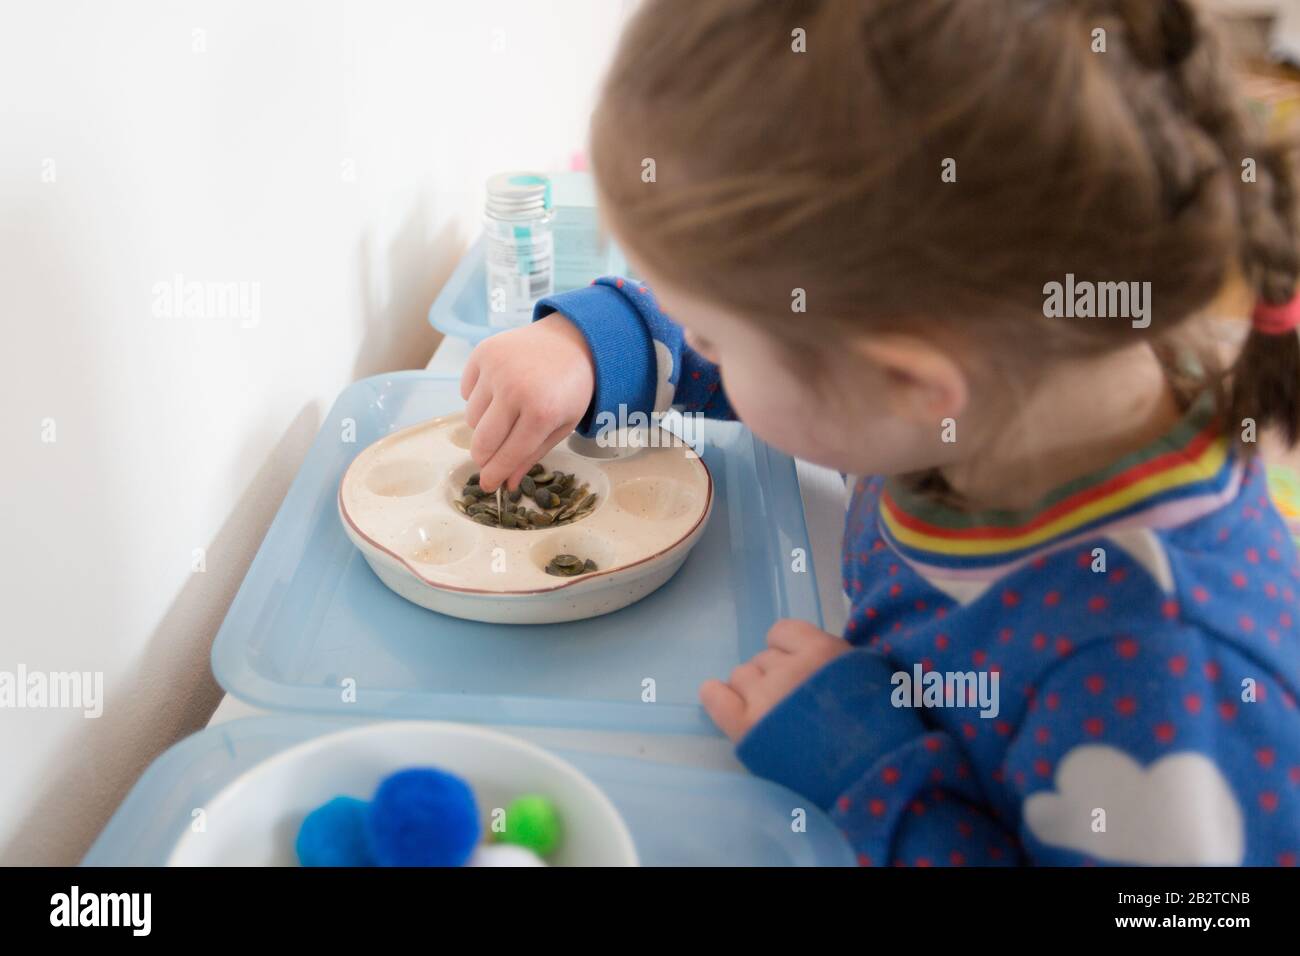 Montessori nursery Stock Photo